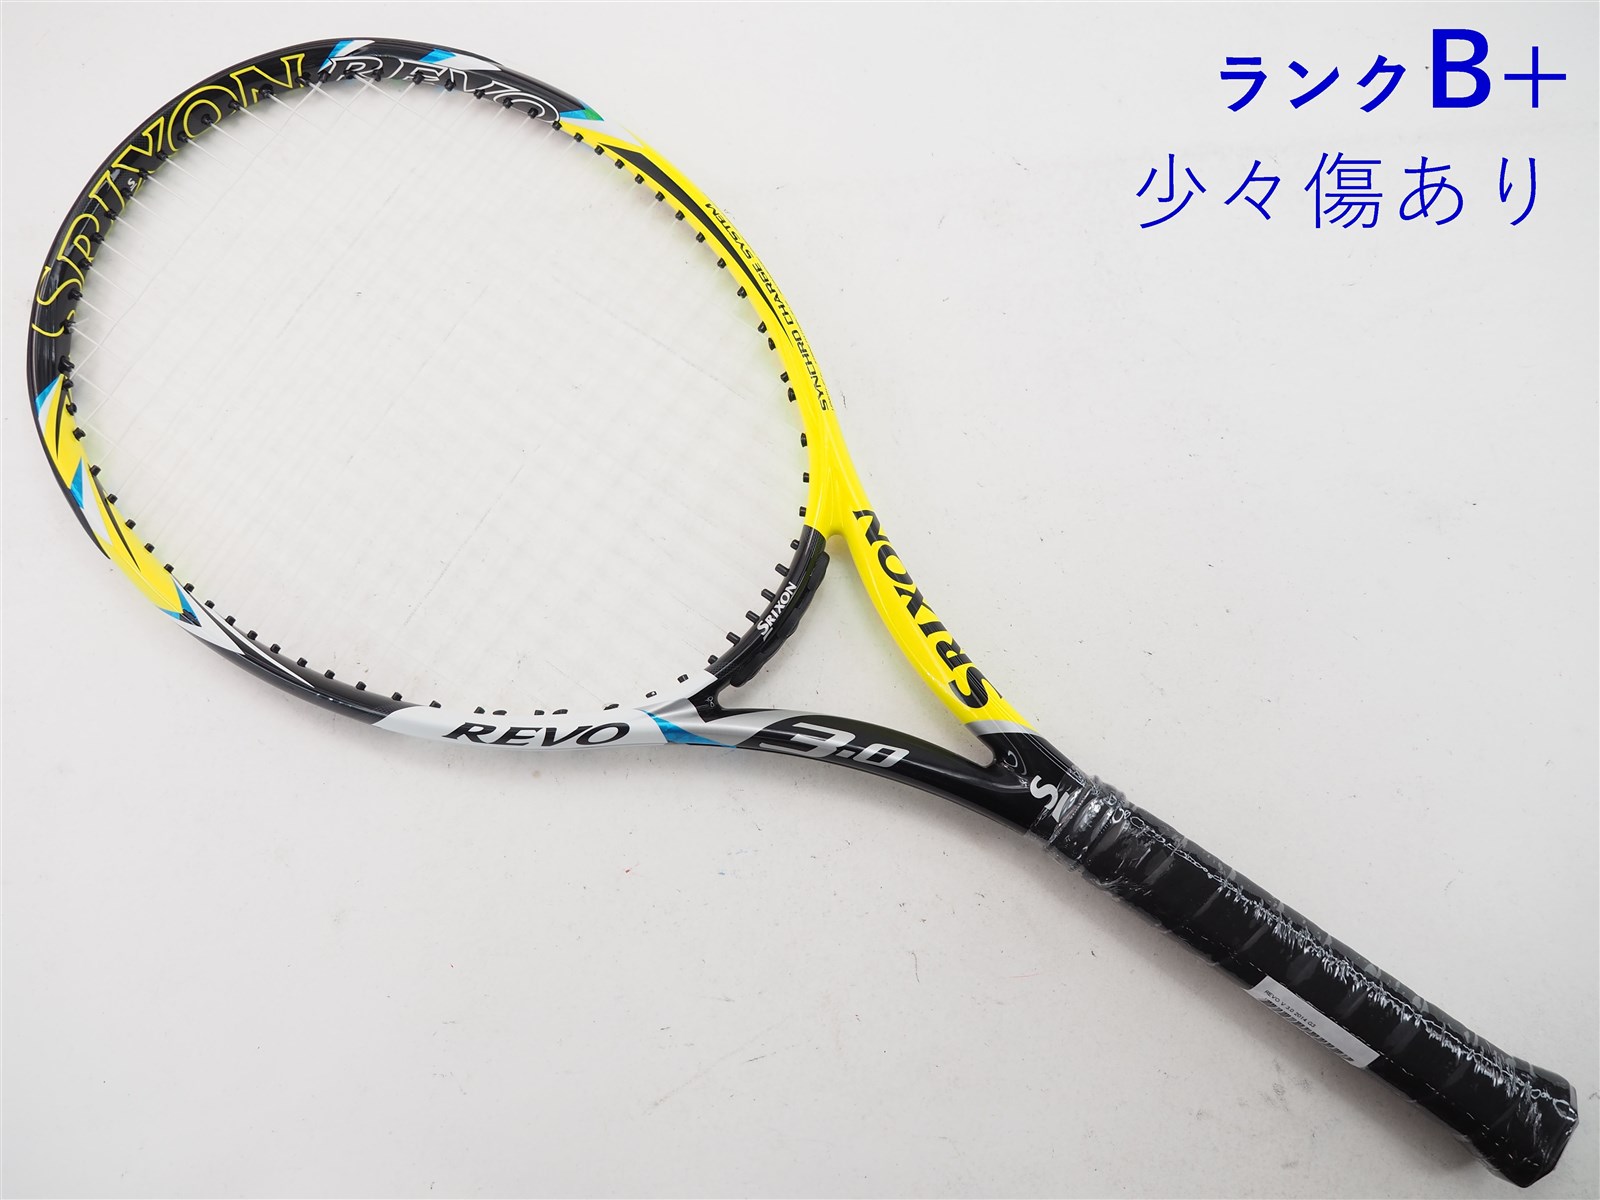 2本組 スリクソンラケット SRIXON REVO CV 5.0 - テニス